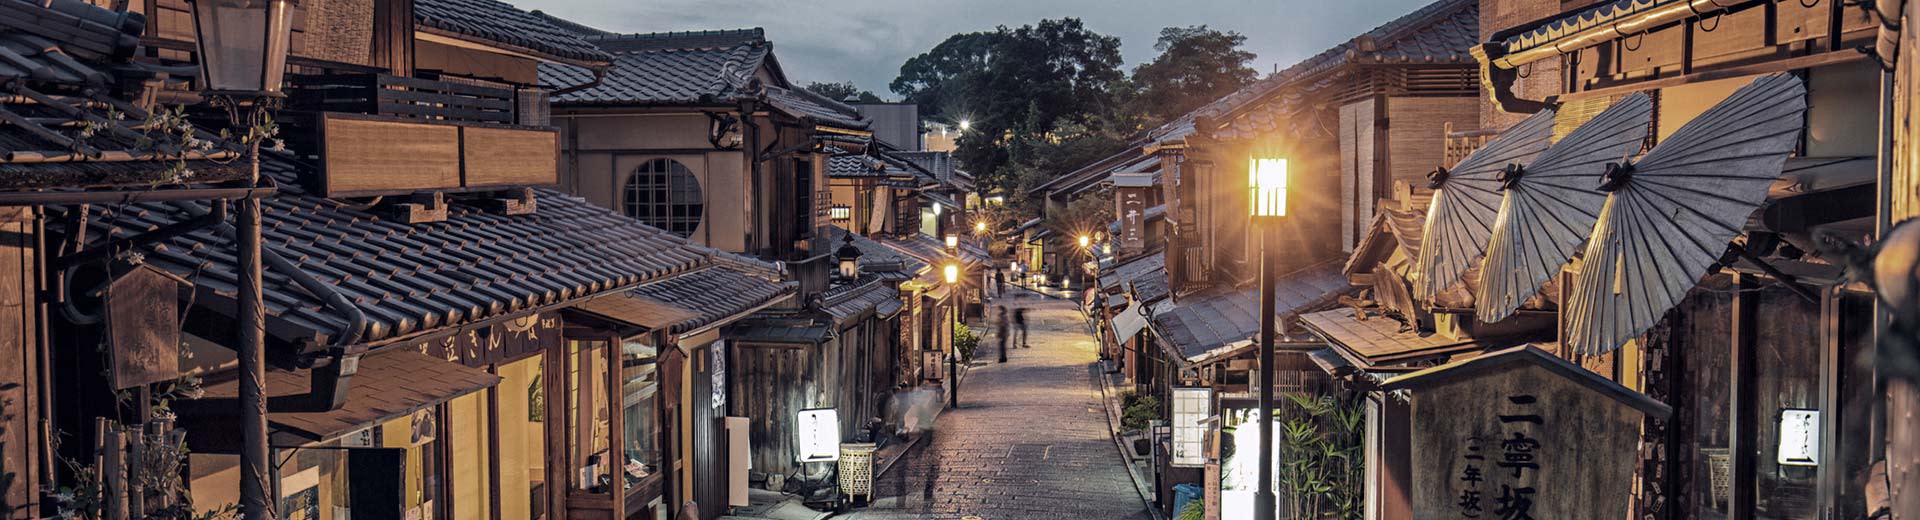 Am Abend leuchten eine schmale Straße mit alten Gebäuden mit Holzfassaden in Kyoto.